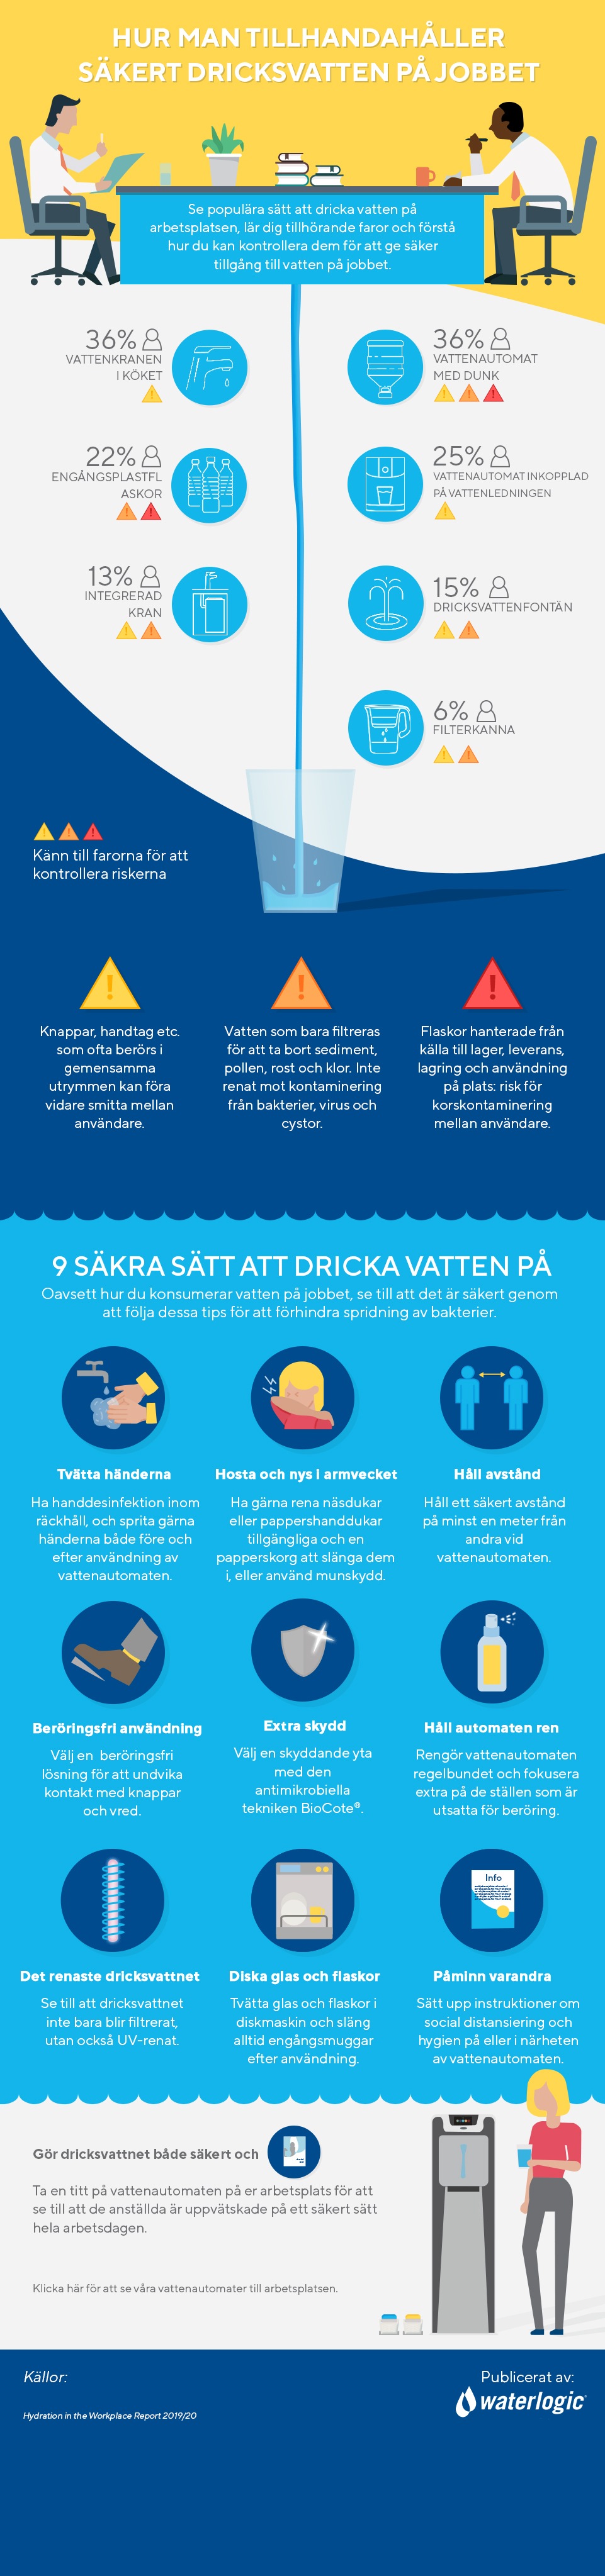 9 säkra sätt att dricka vatten